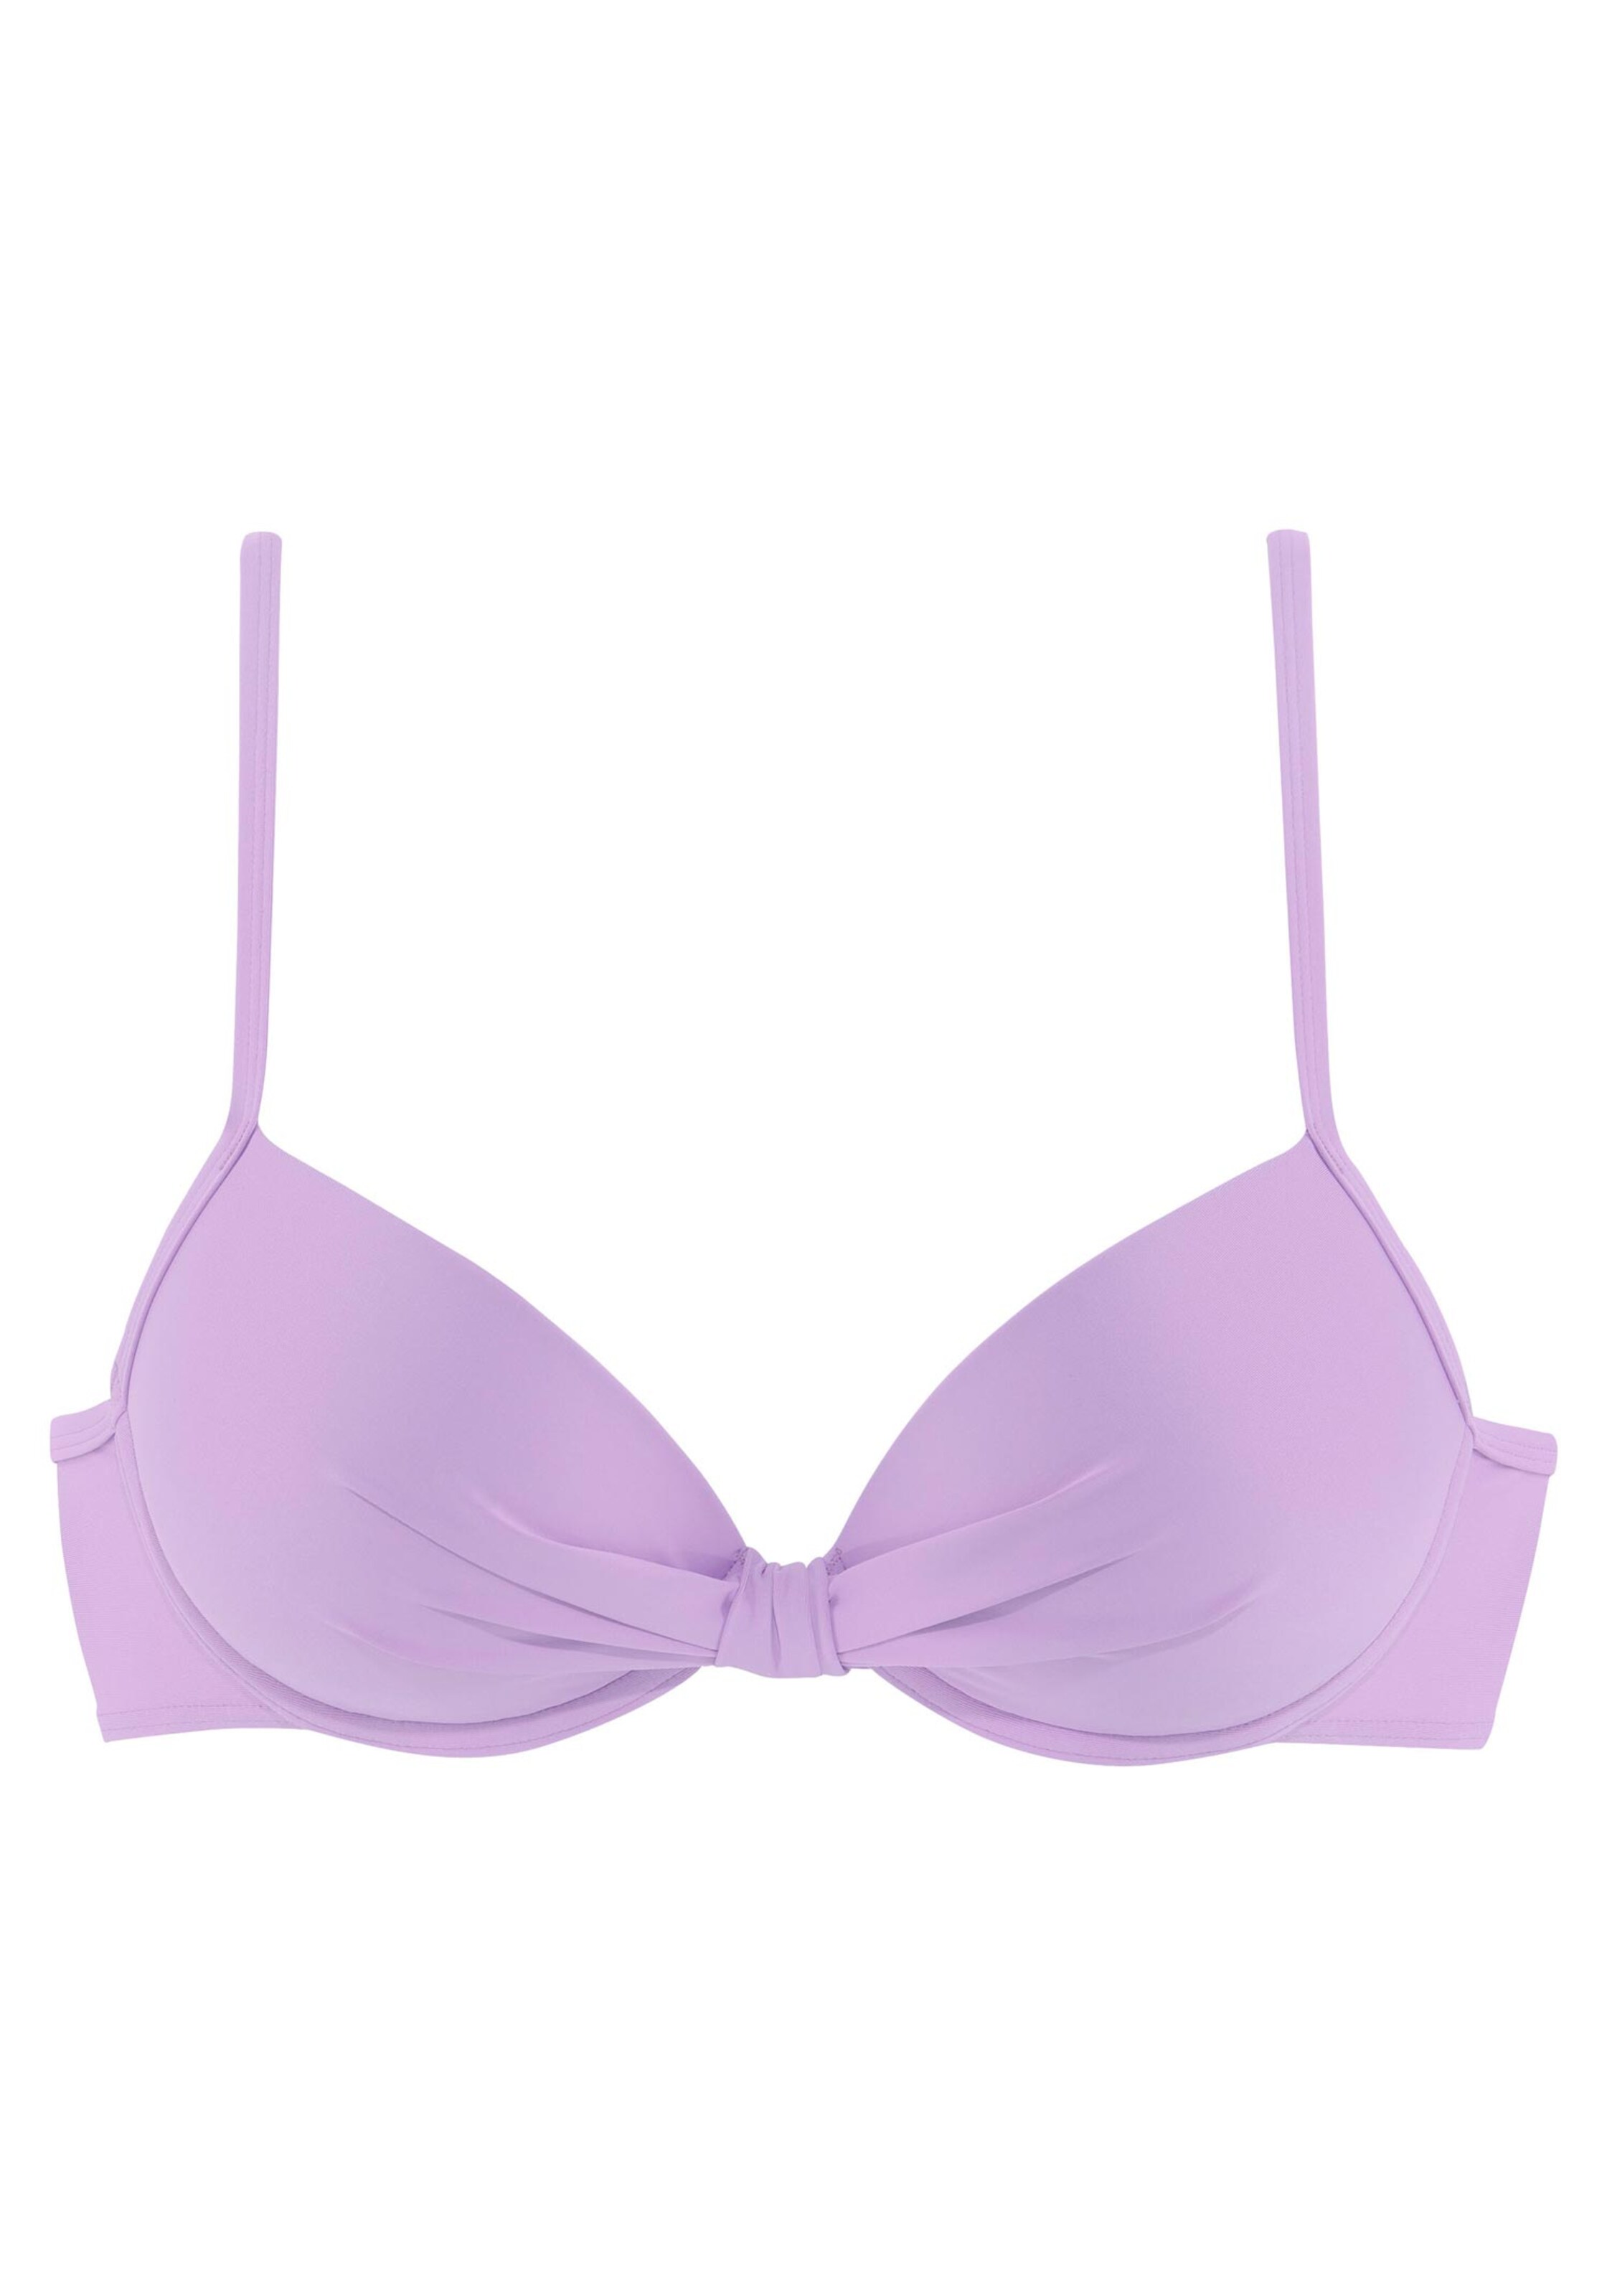 Bademode Bügel-Bikinis s.Oliver Bügel-Bikini-Top in lila 